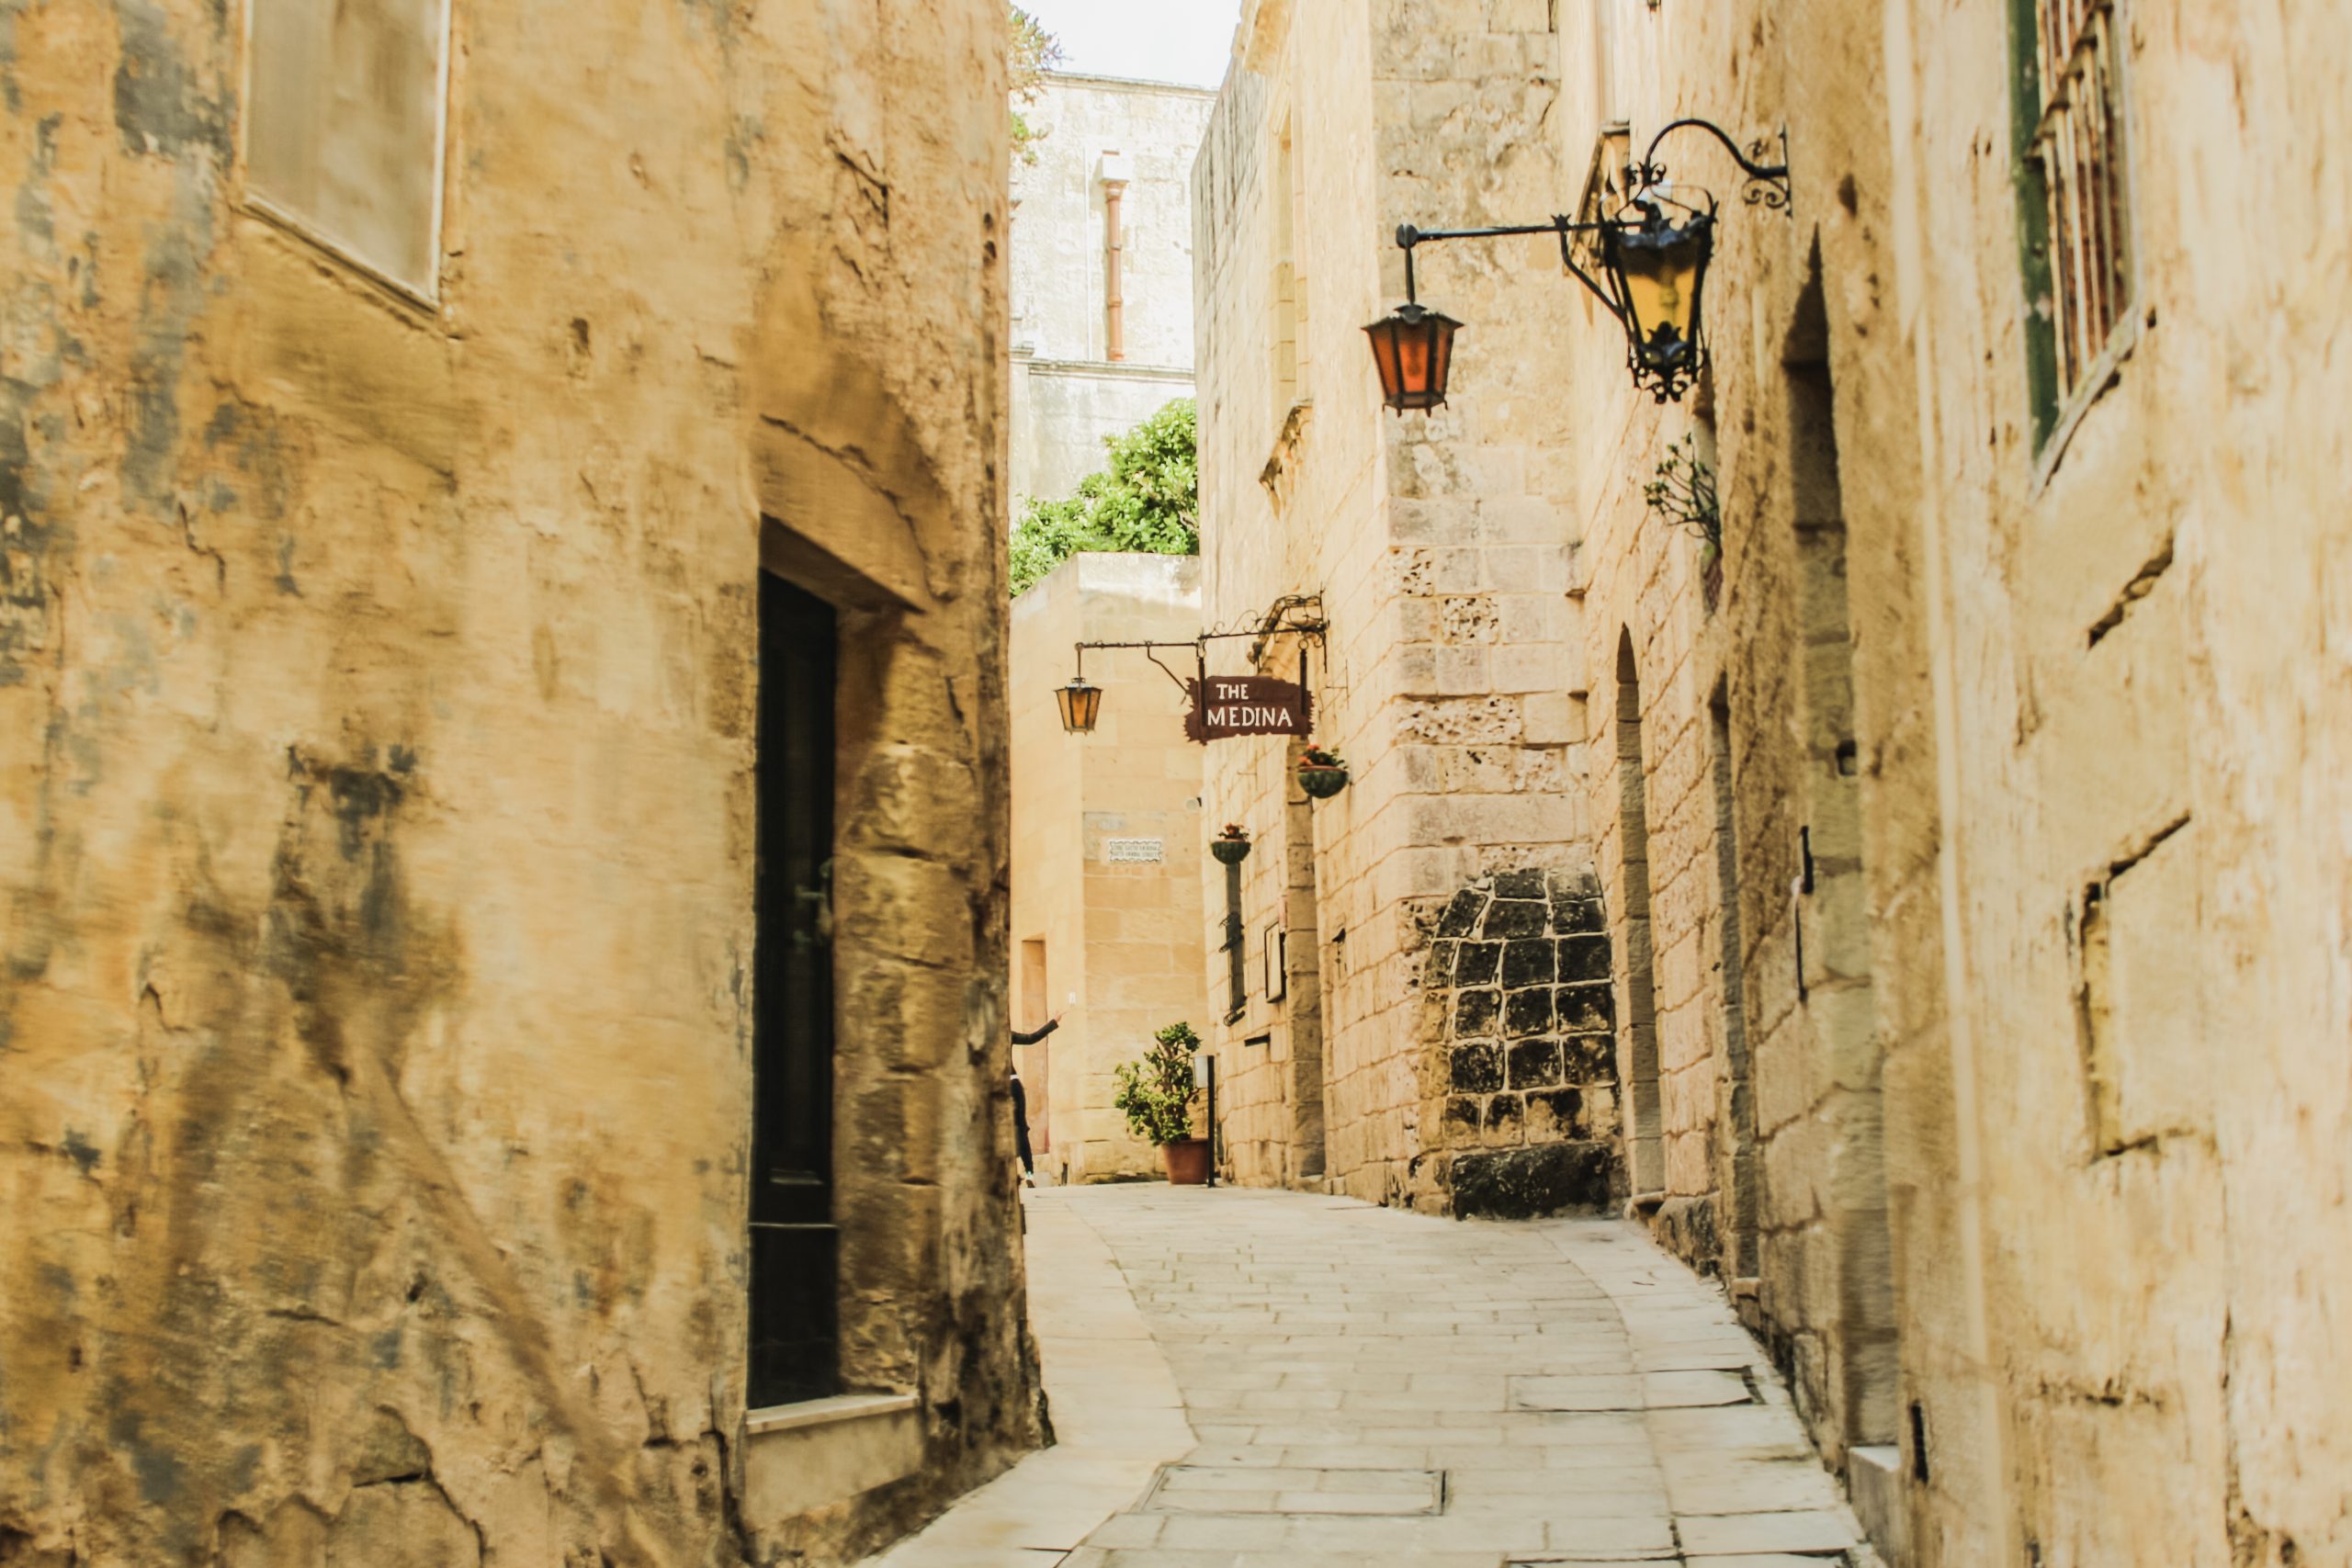 Fotografie de strada in Mdina, Malta